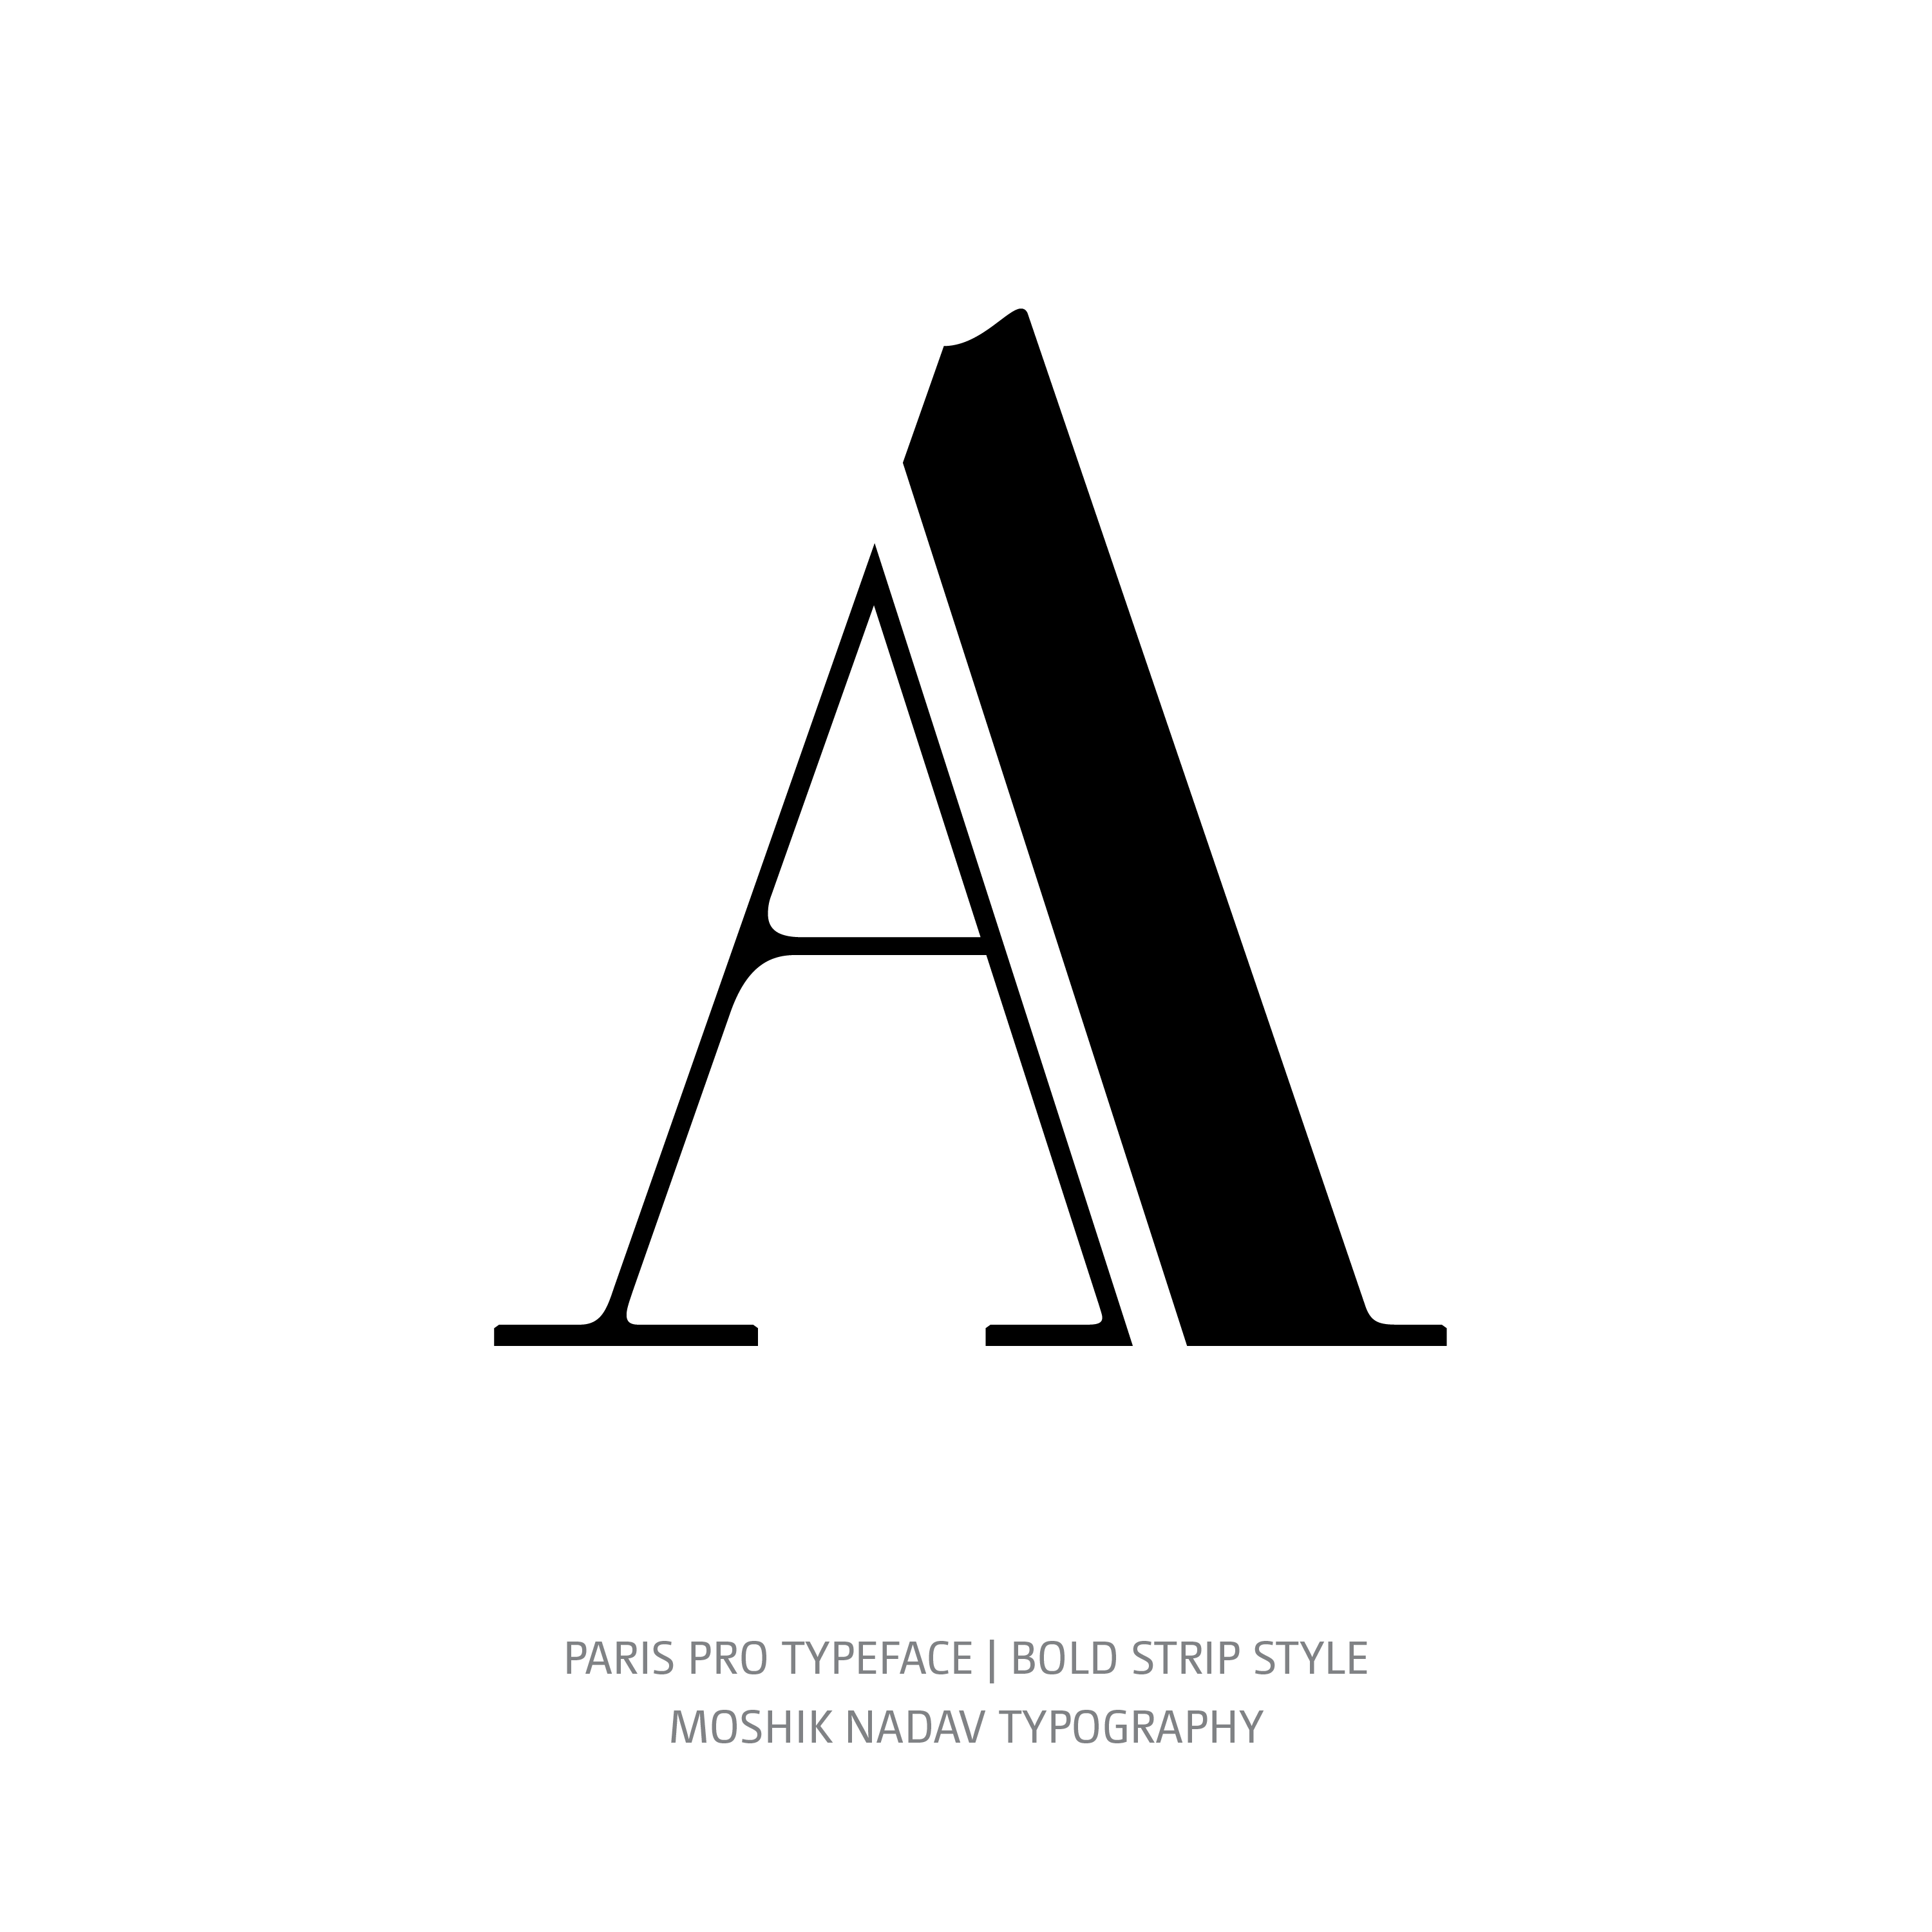 Paris Pro Typeface Bold Strip A